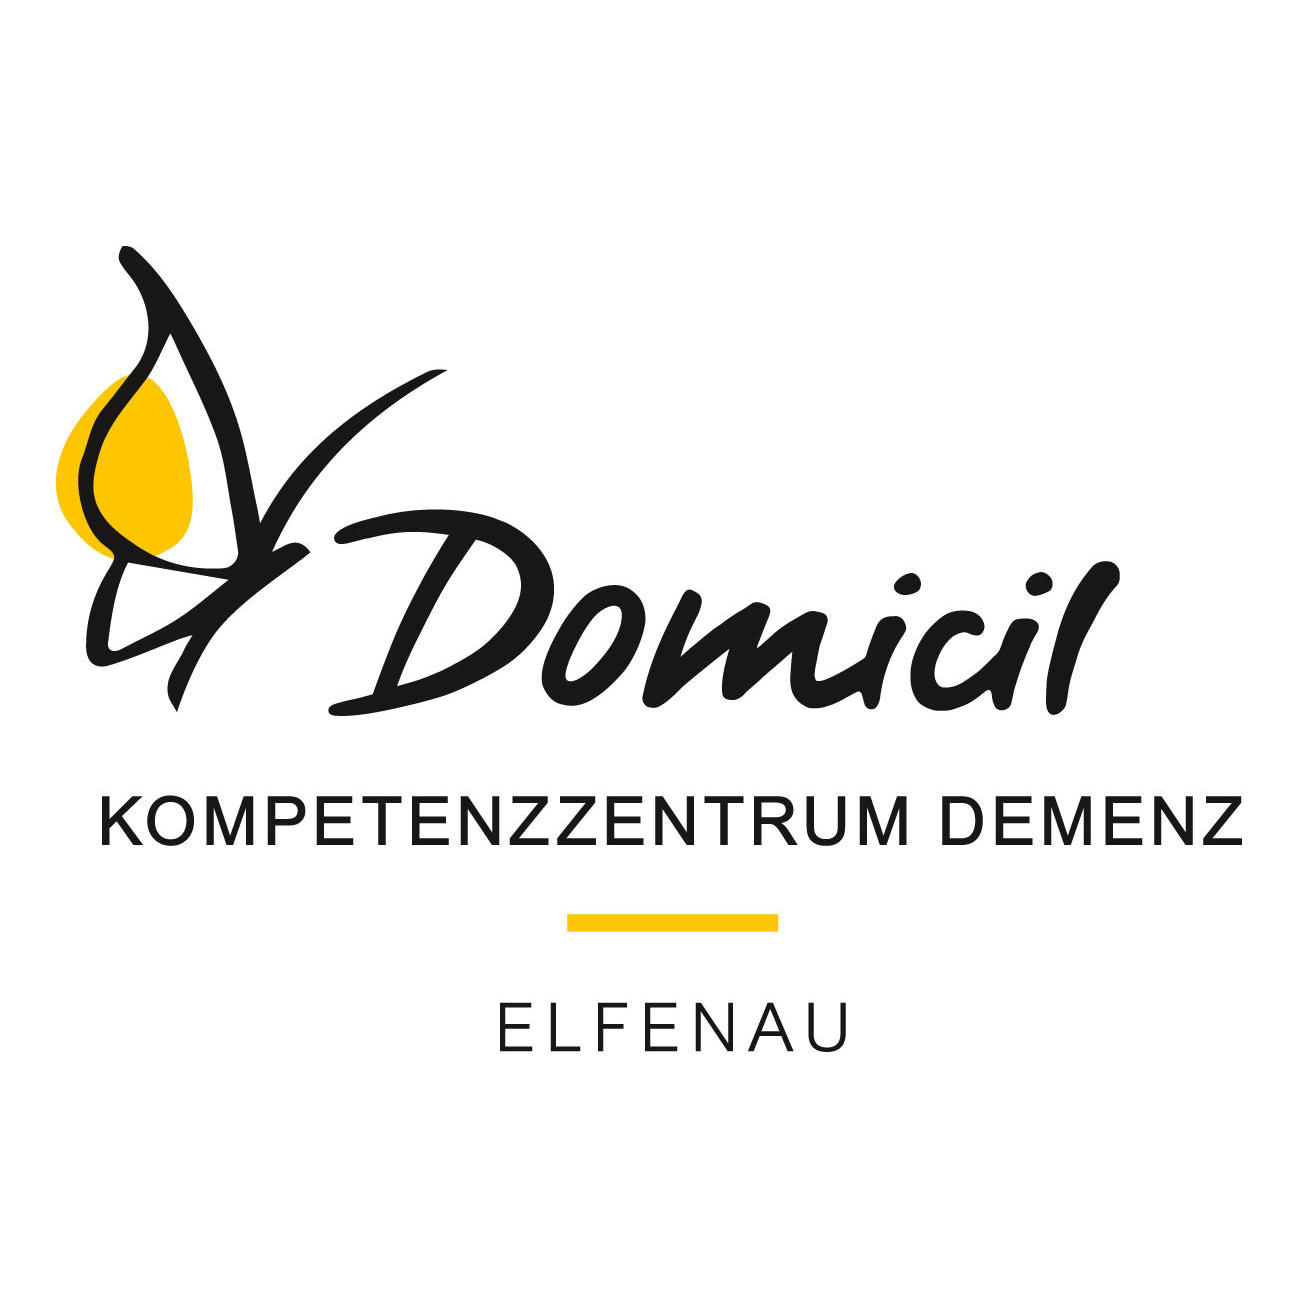 Domicil Kompetenzzentrum Demenz Elfenau Logo